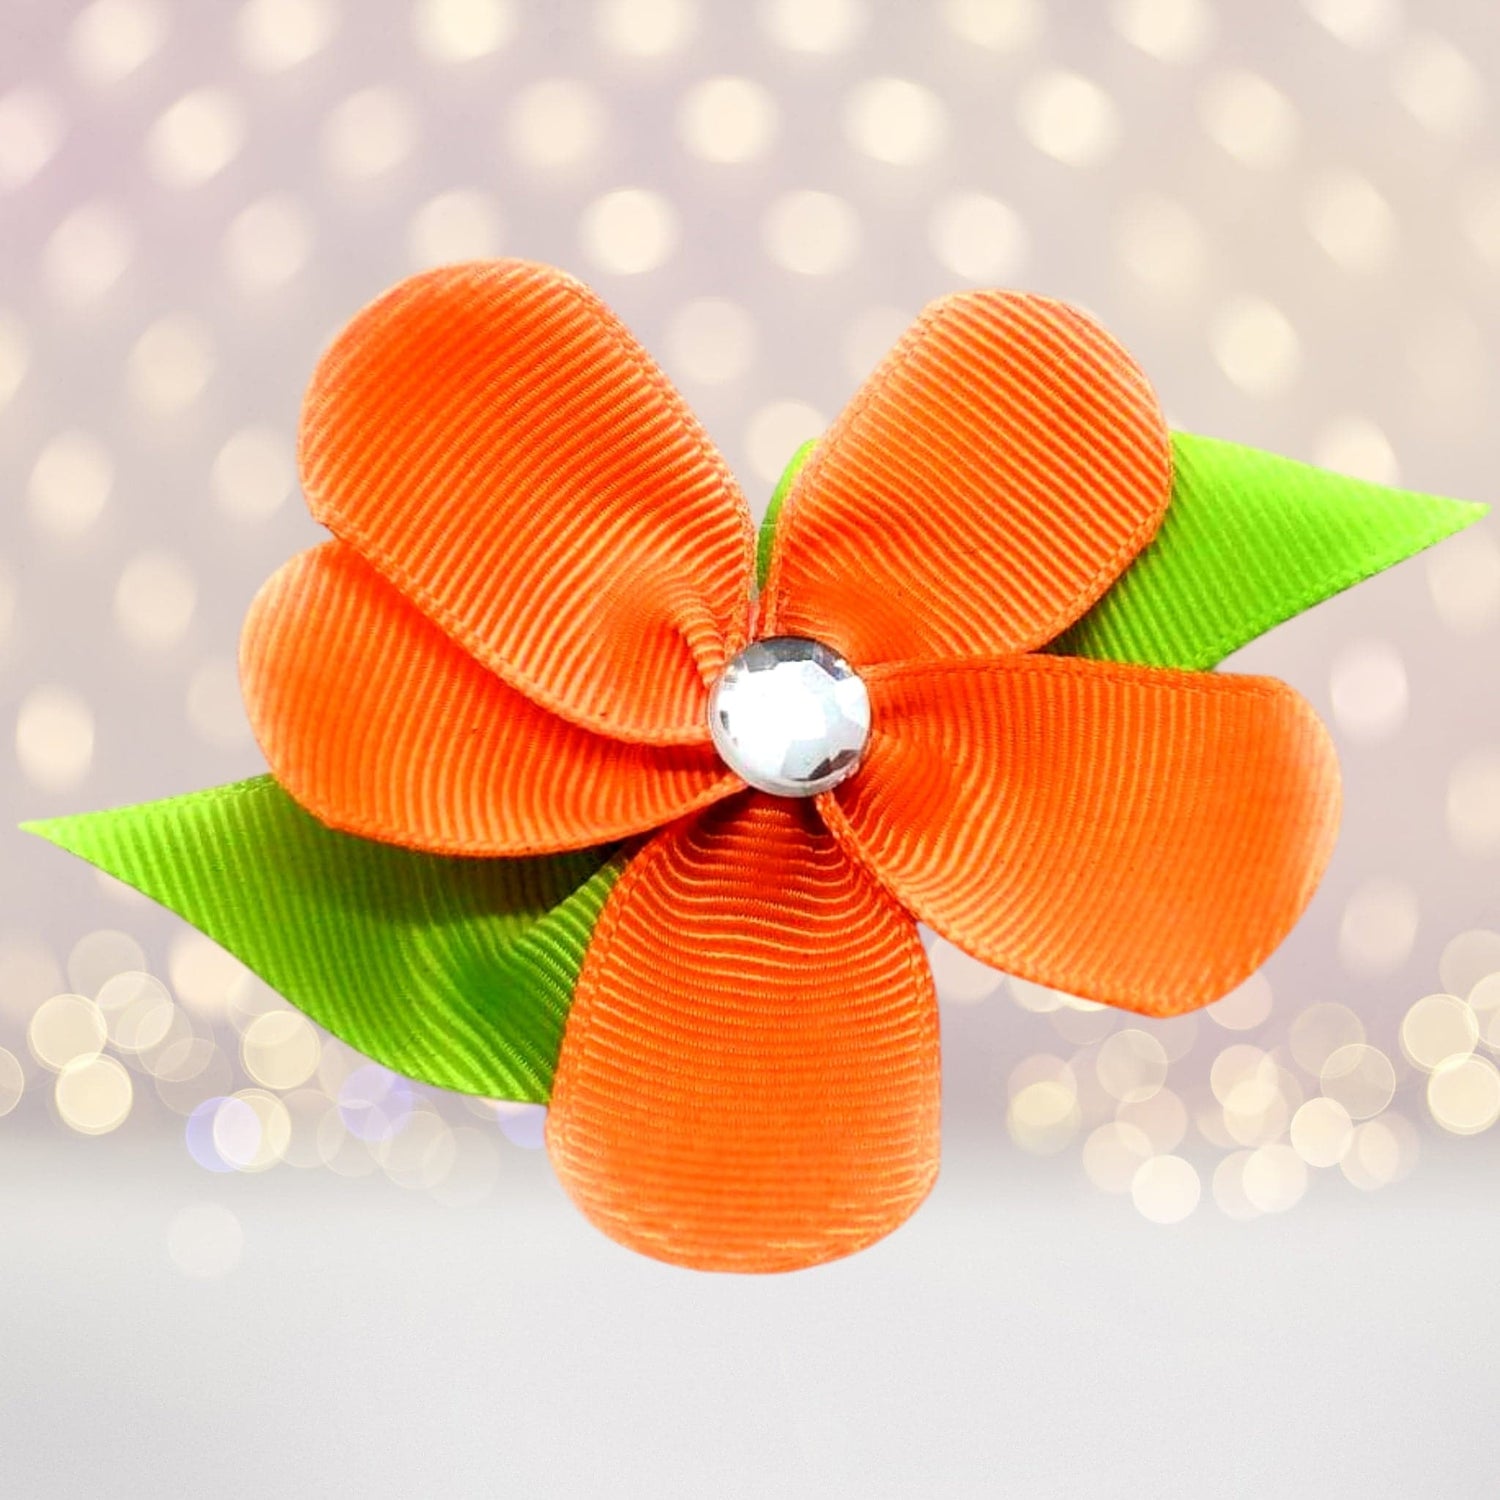 Hair Flower - Orange Ribbon Hair Flower Clip, Orange Flower Hair Clip